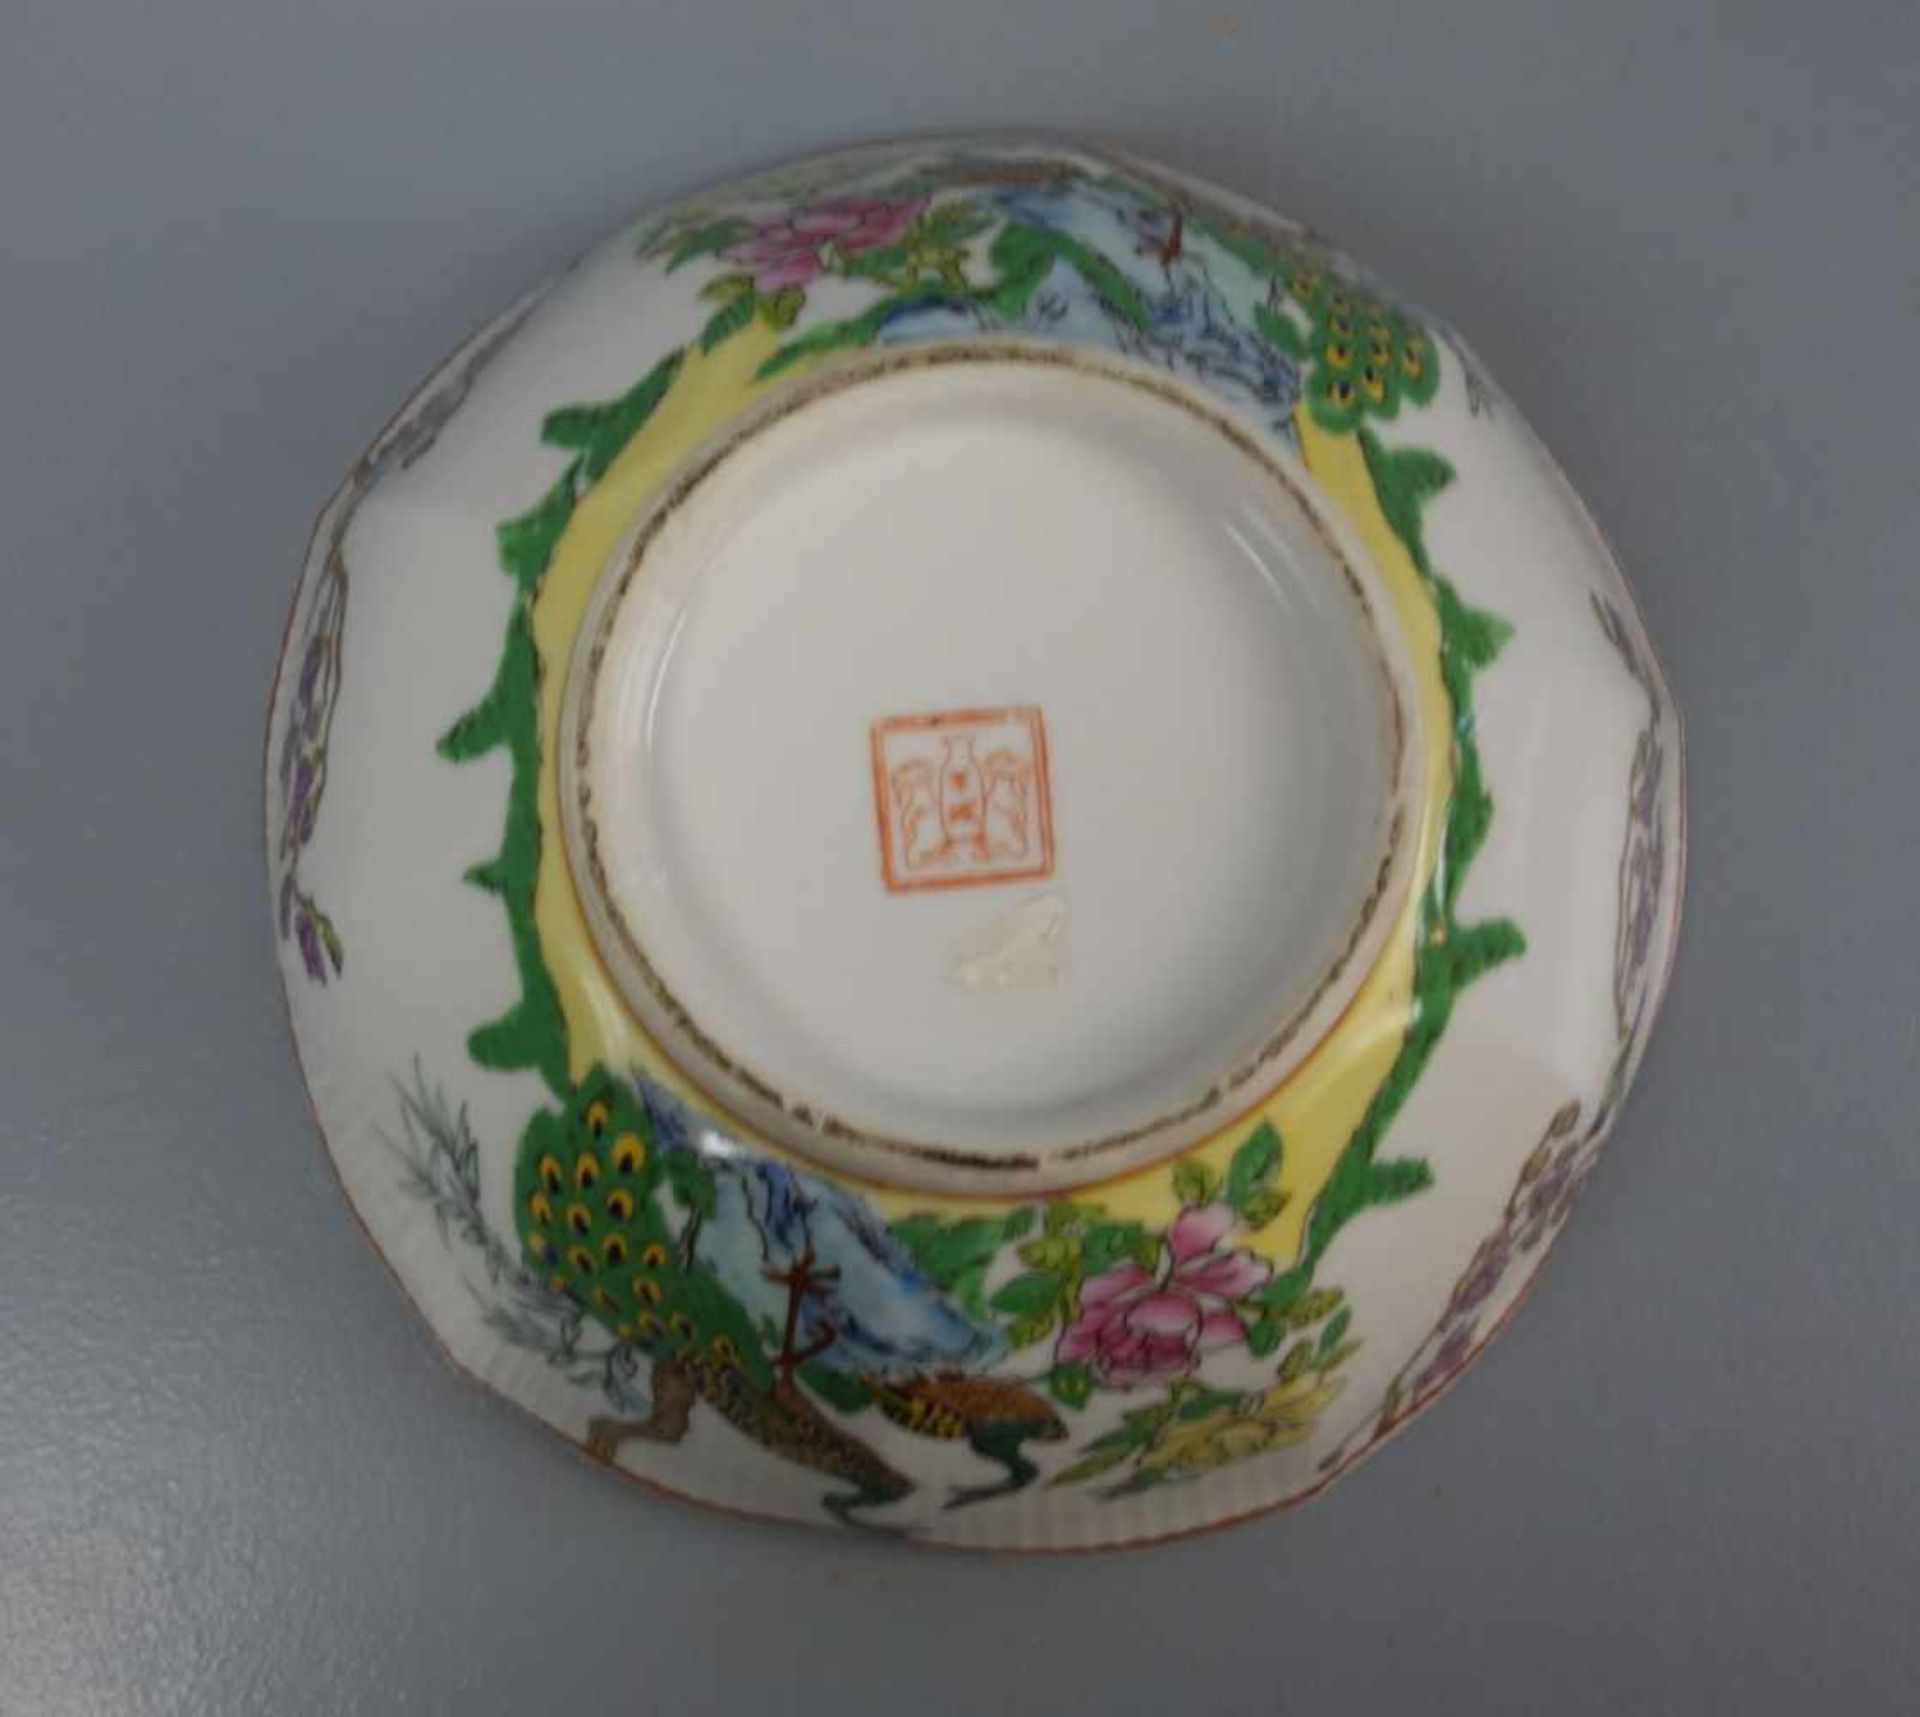 CHINESISCHE SCHALE / bowl, Porzellan, unter dem Stand aufglasurrot gemarkt mit Vasenmotiv, flankiert - Bild 3 aus 4